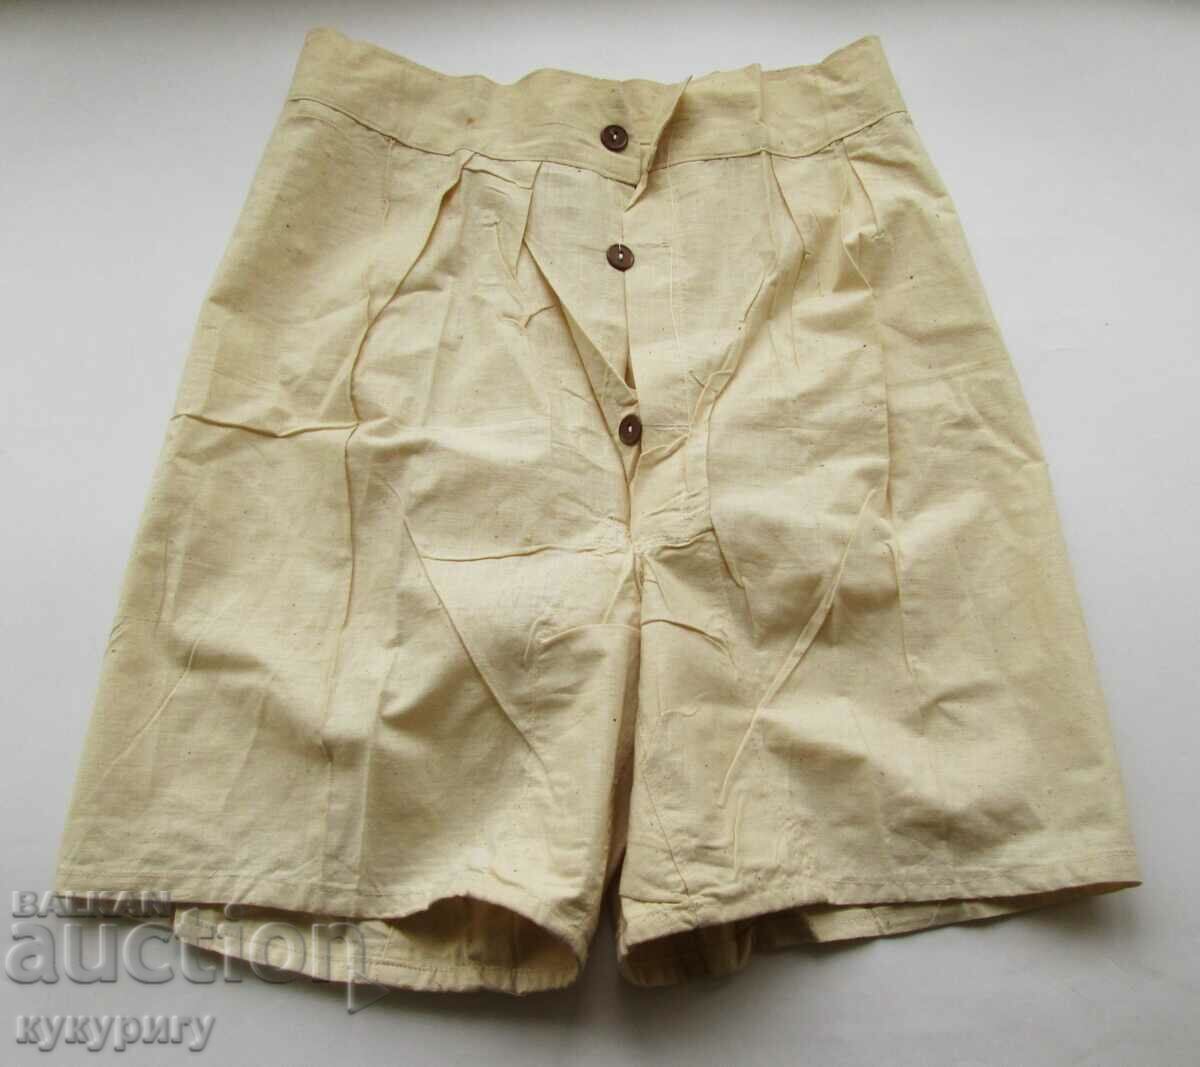 Pantaloni scurți vechi de lenjerie intimă dintr-o uniformă militară regală al doilea război mondial